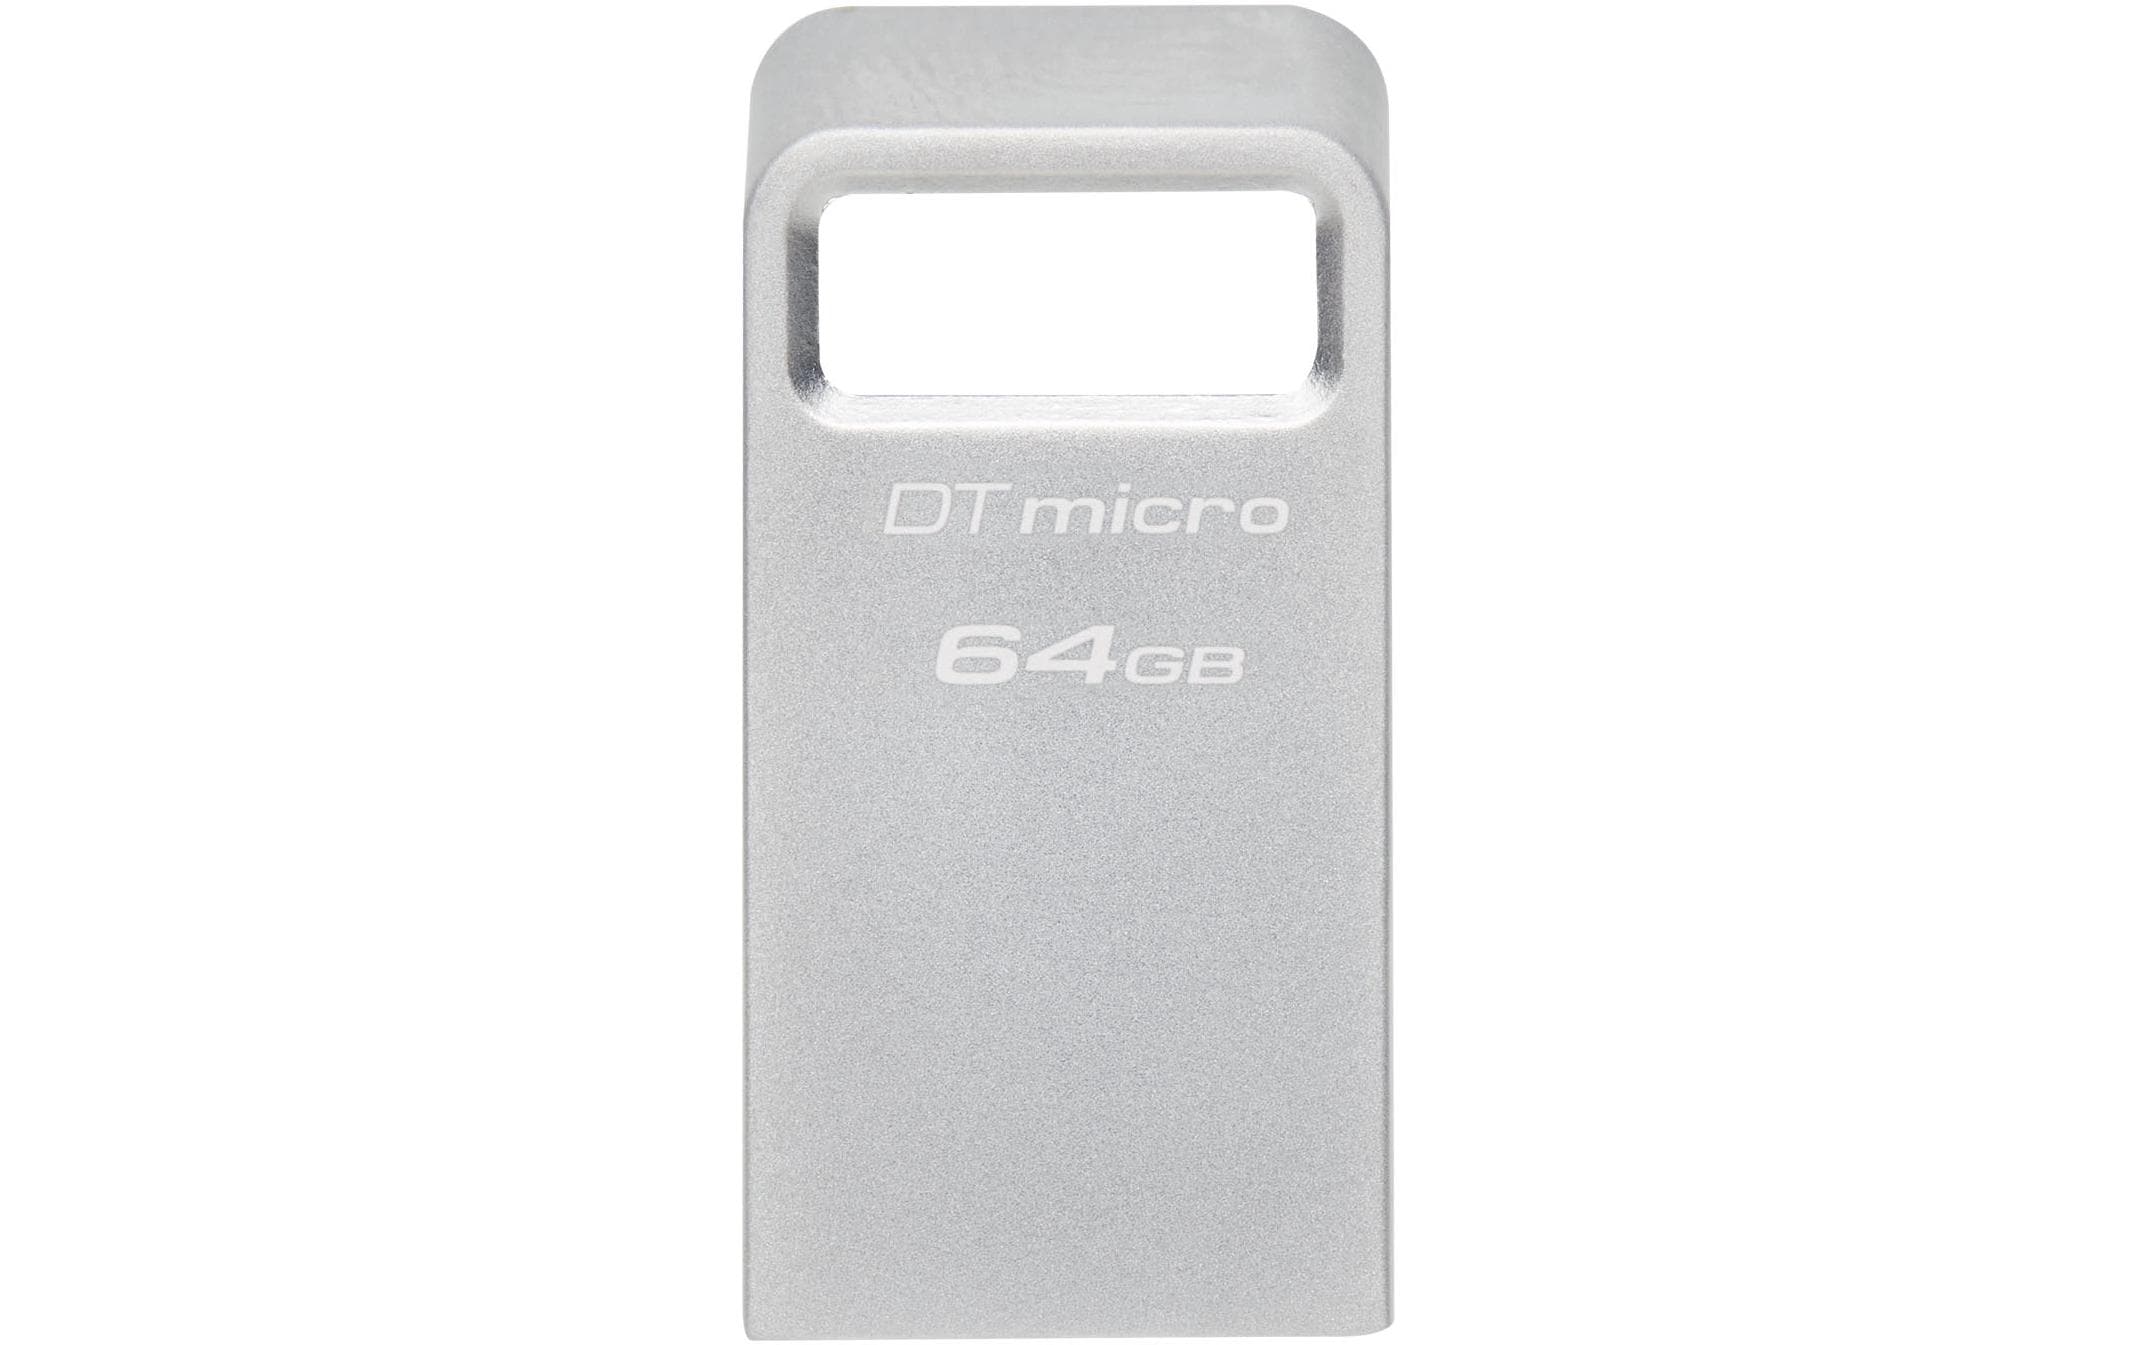 Kingston USB-Stick DT Micro 64 GB